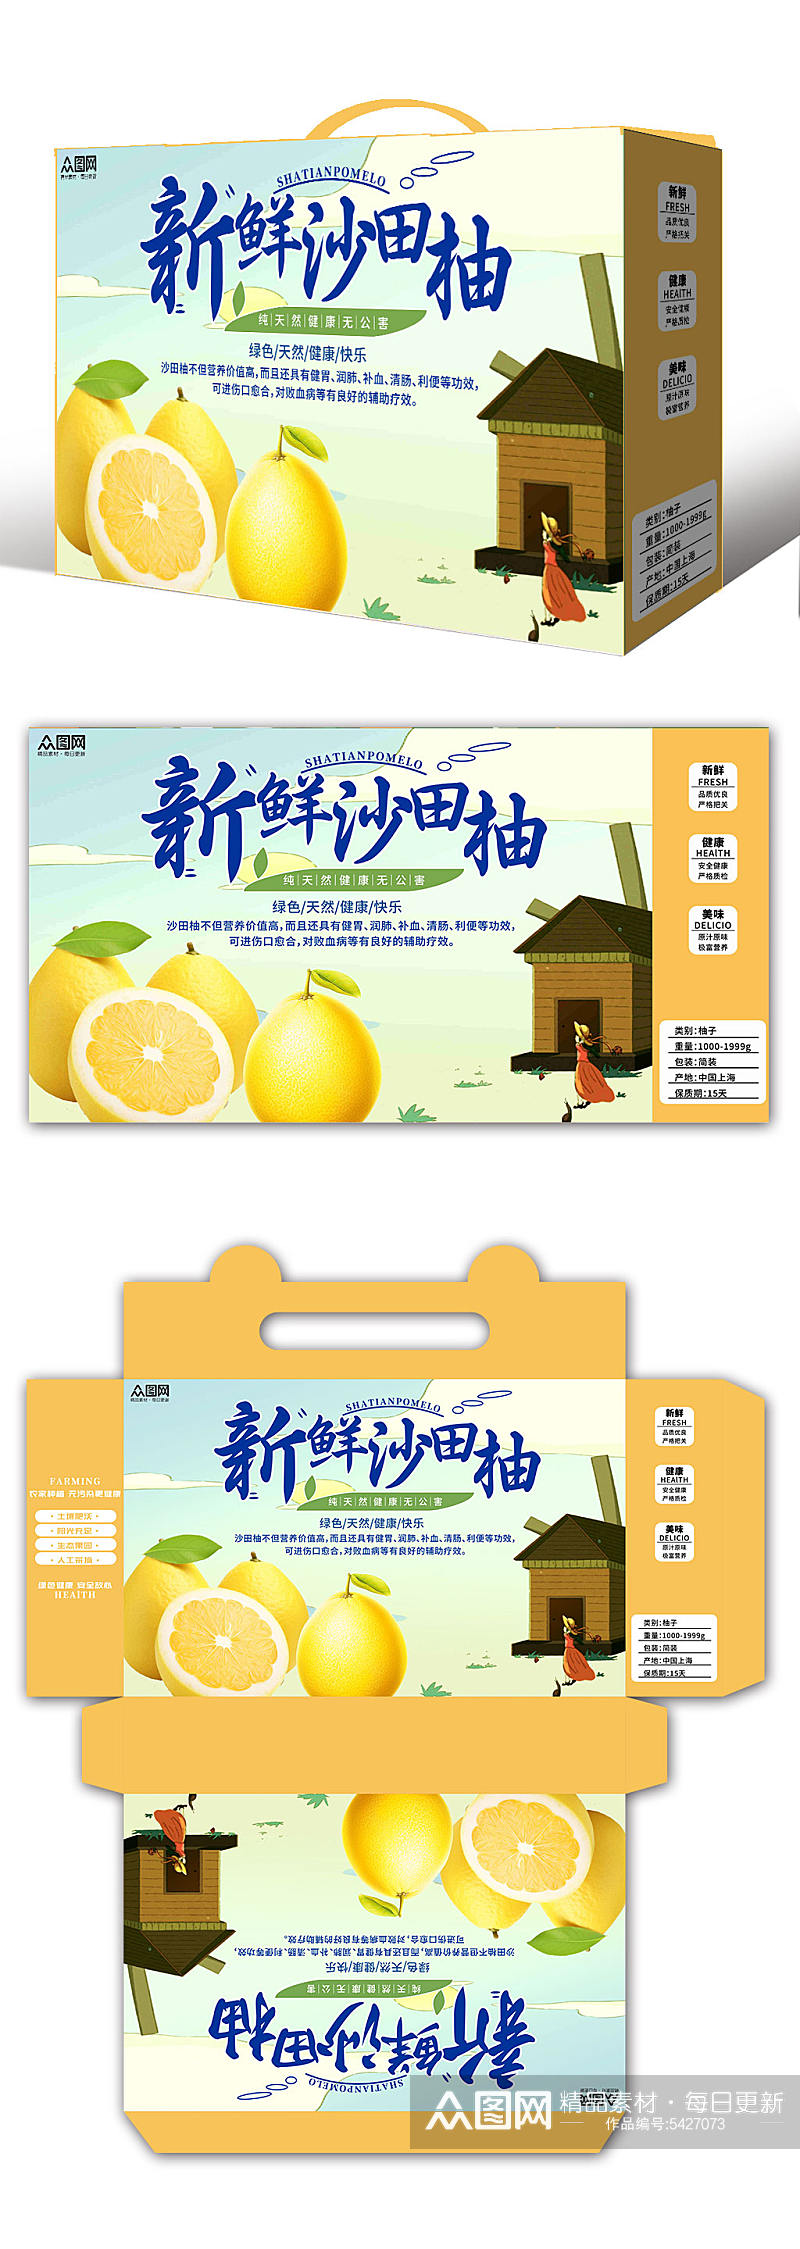 新鲜柚子水果包装盒设计素材